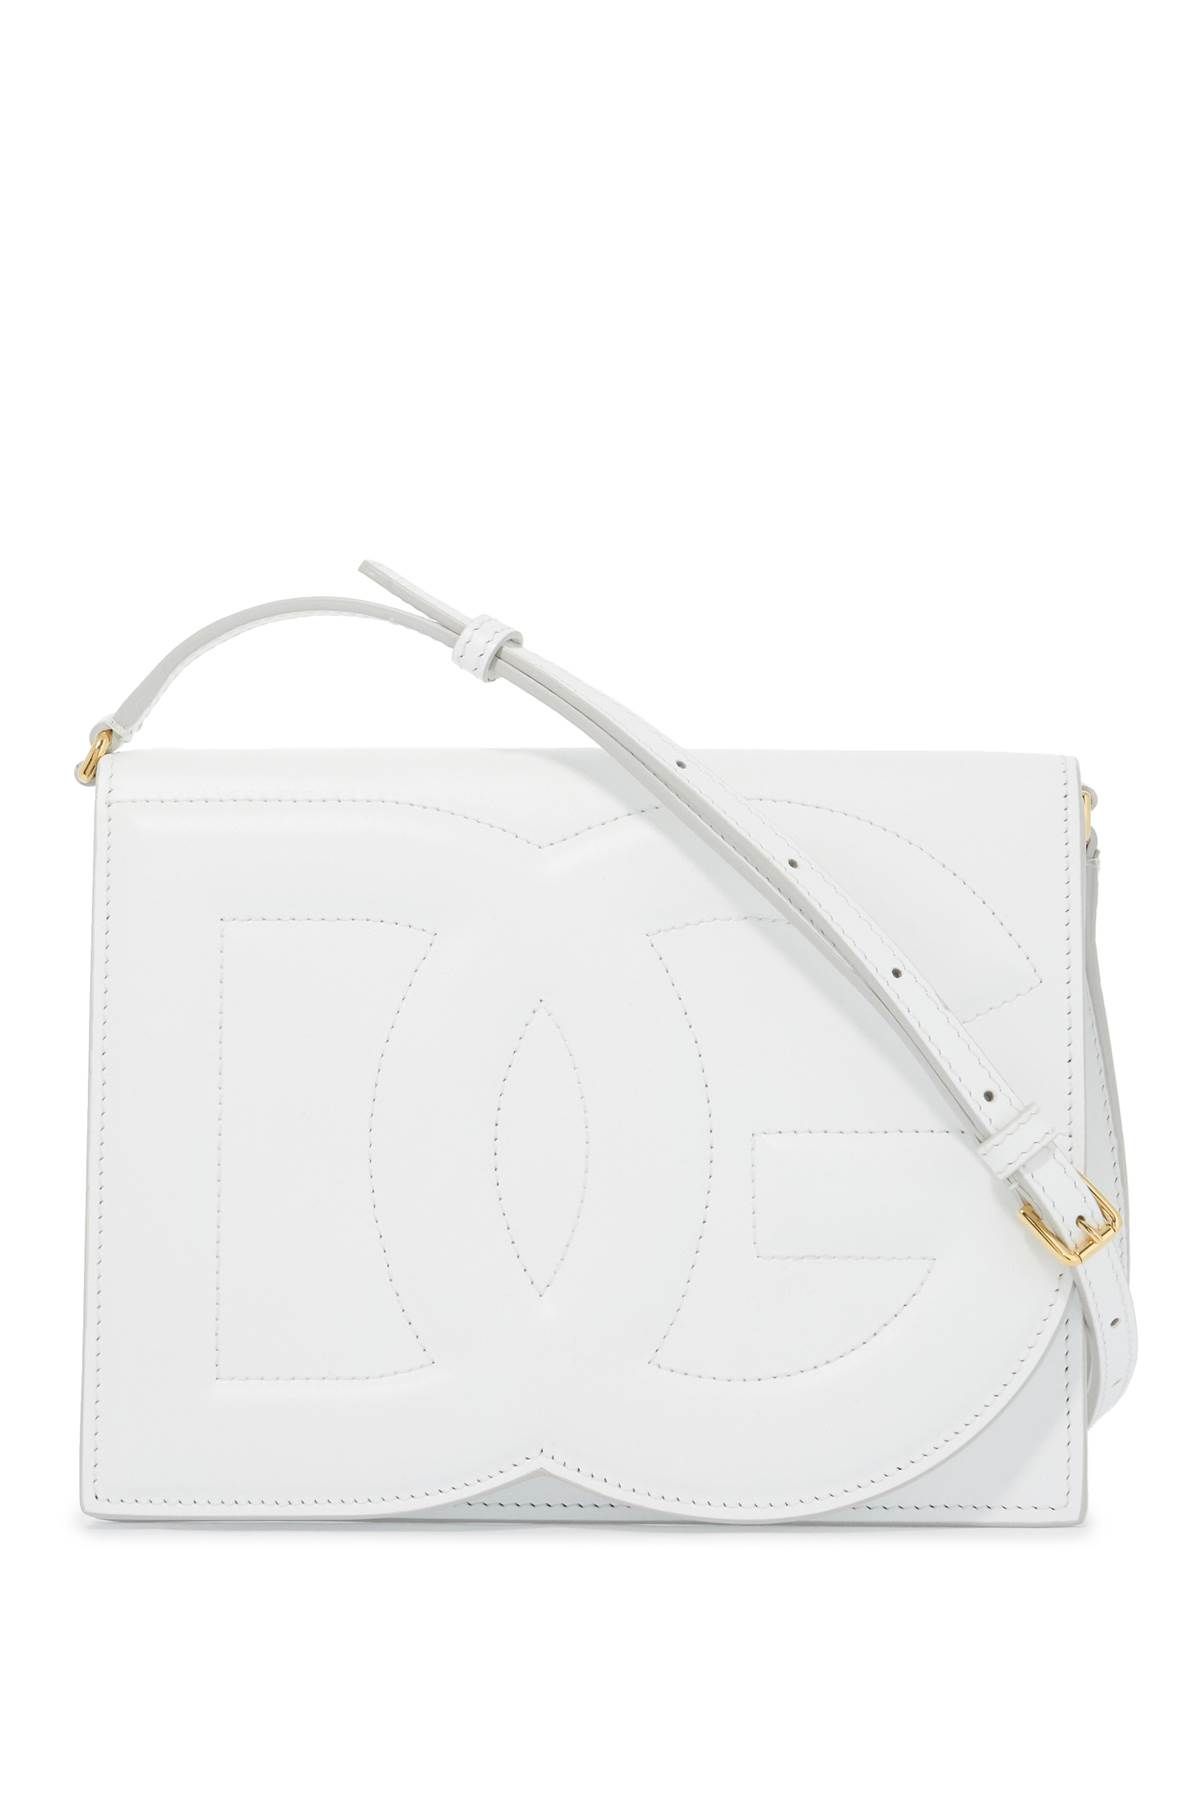 Dolce & Gabbana DOLCE & GABBANA dg logo crossbody bag